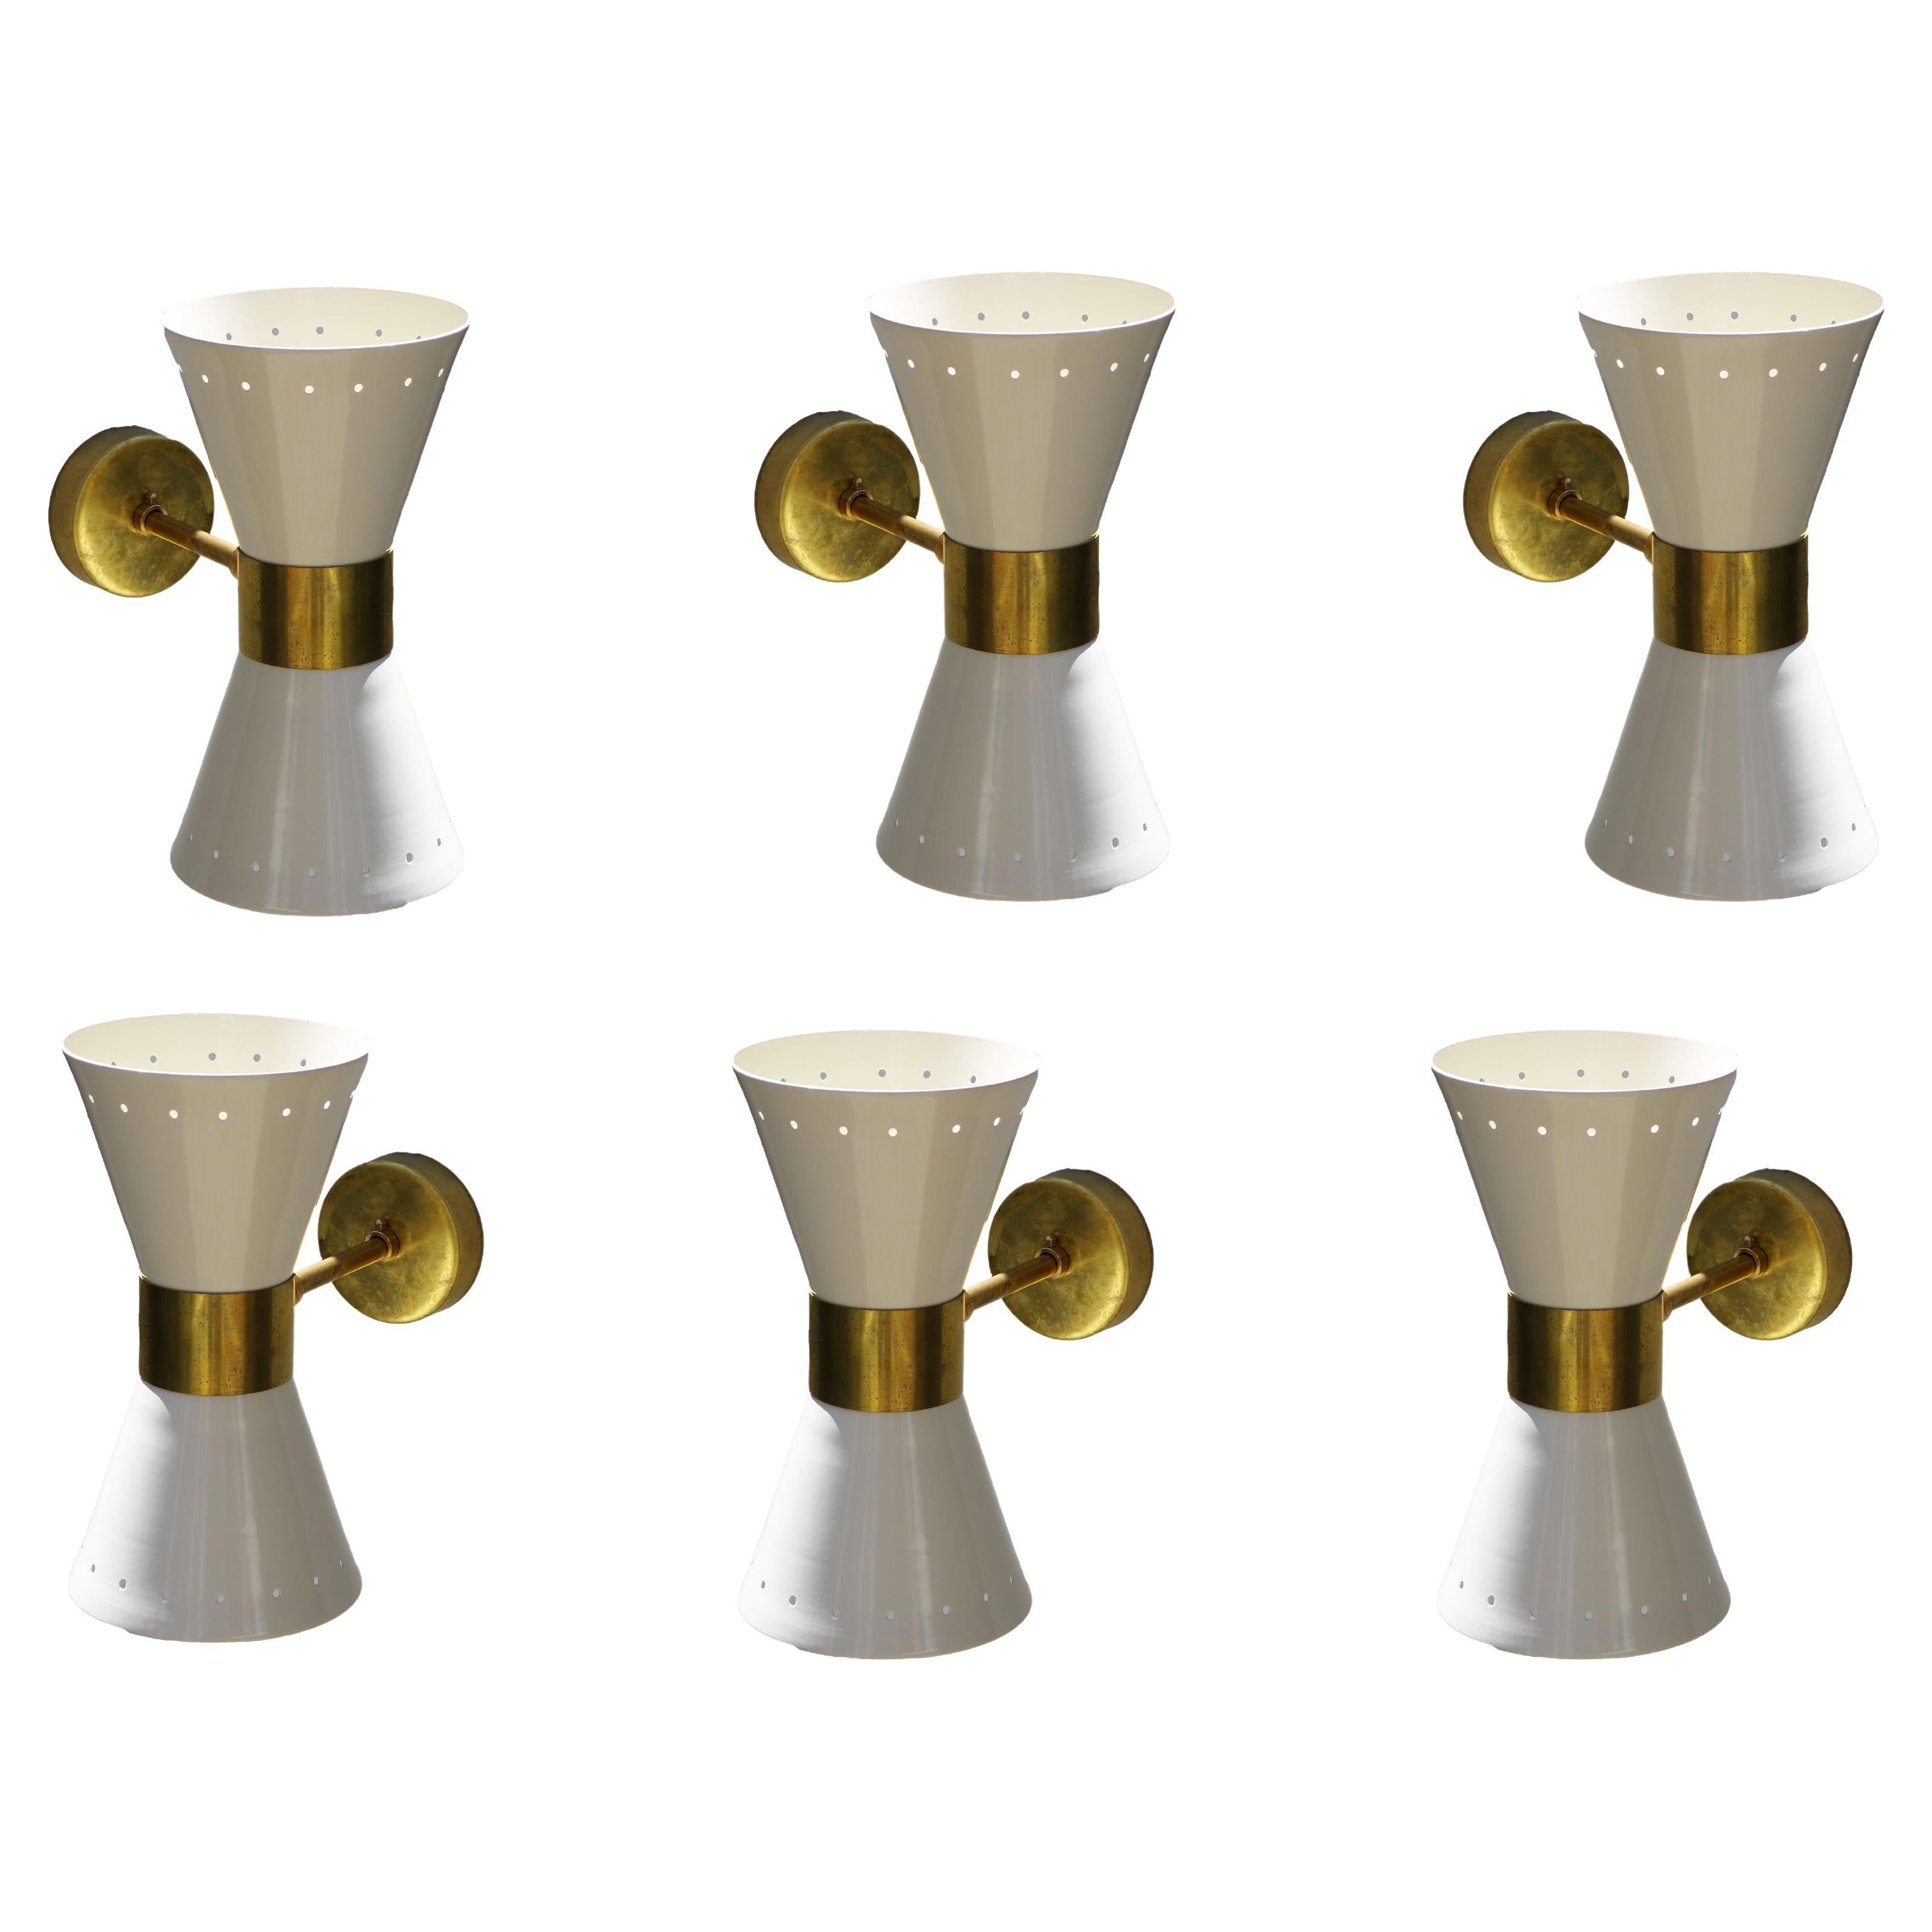 1 of 6 Italian Modern Design Wall Light Sconces Stilnovo Style Ivory White Brass For Sale